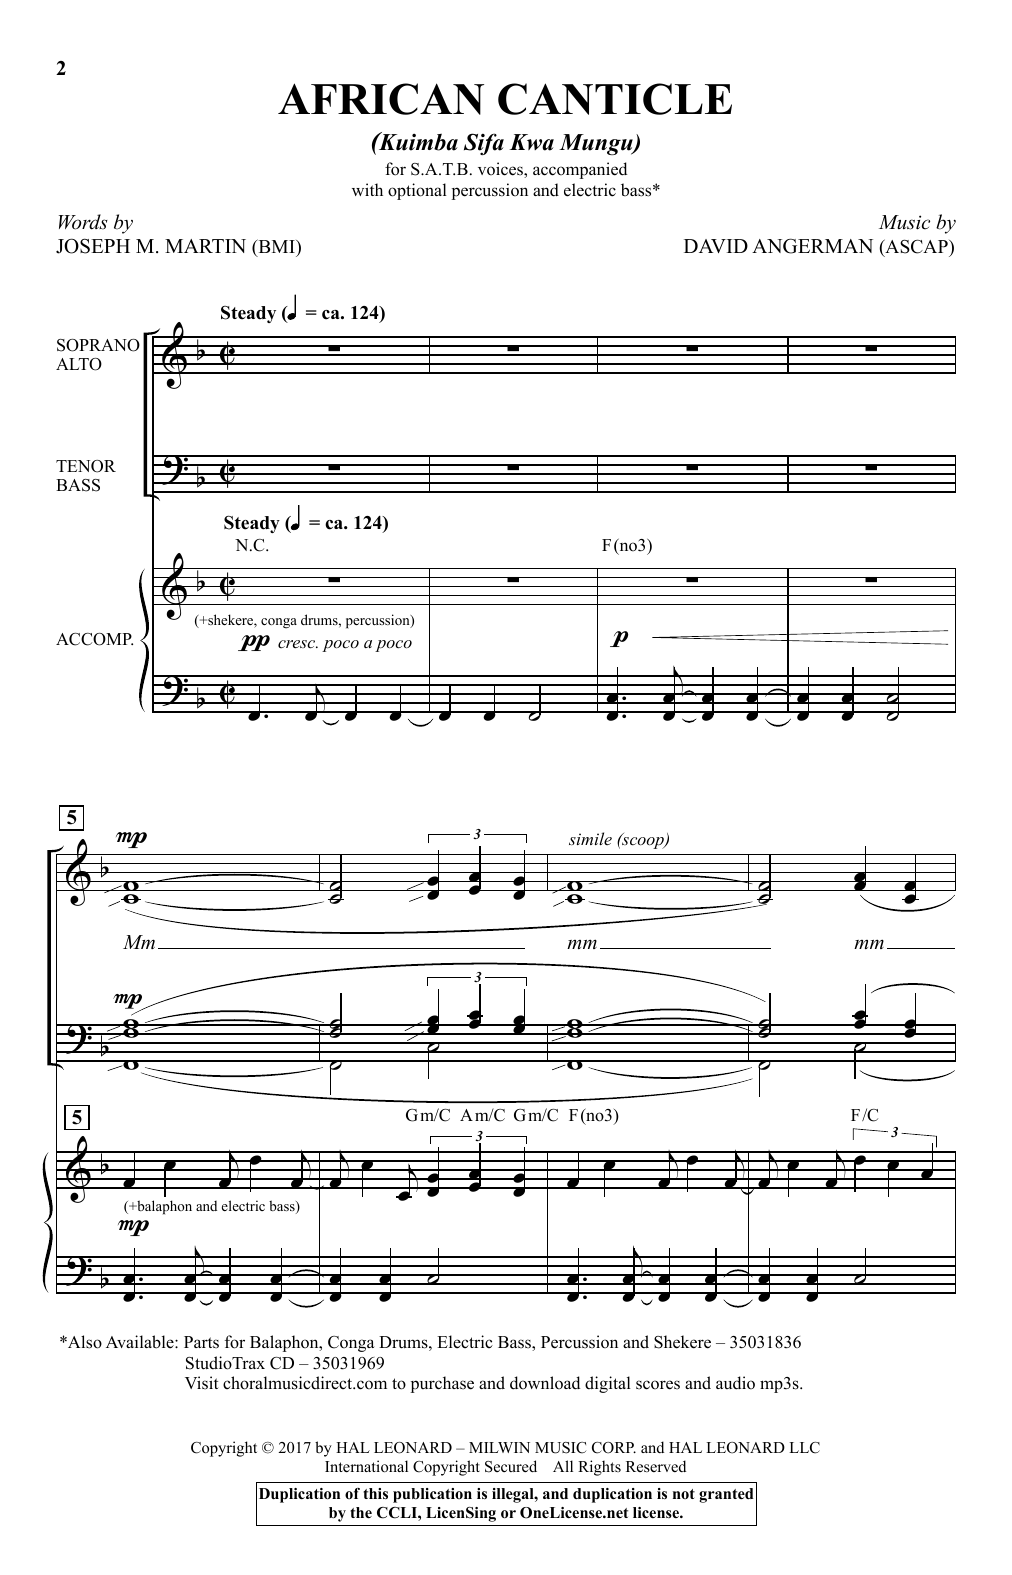 David Angerman African Canticle (Kuimba Sifa Kwa Mungu) sheet music notes and chords arranged for SATB Choir